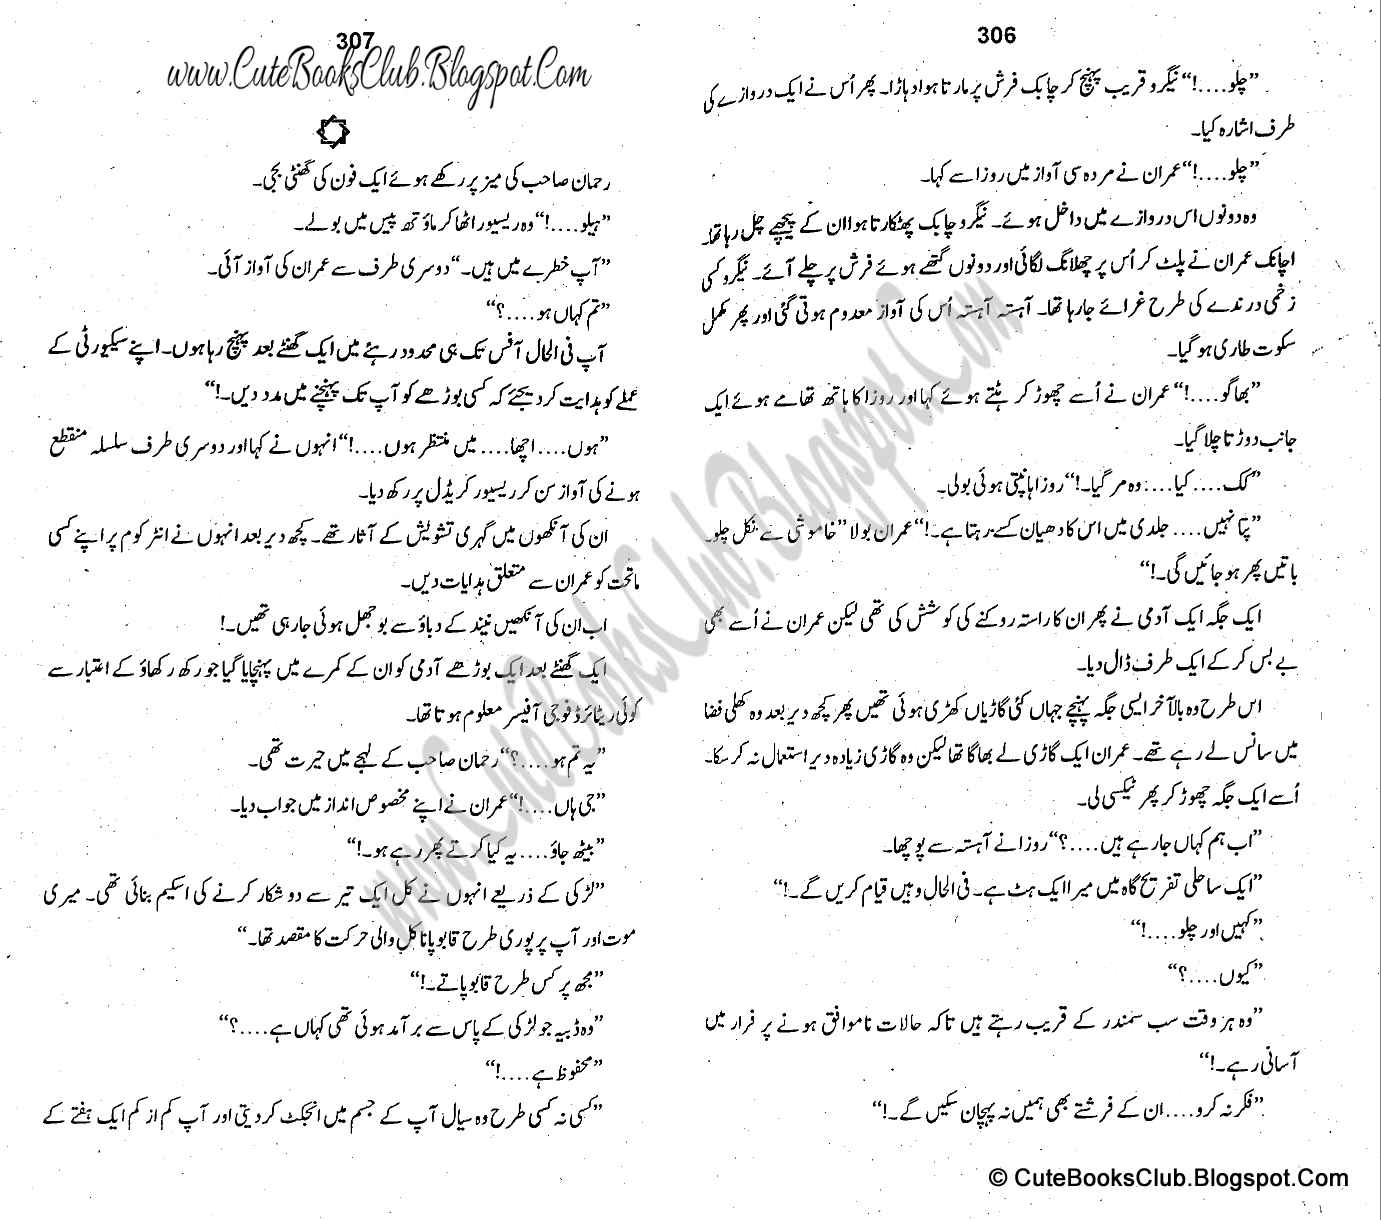 067-Tasveer Ki Maut, Imran Series By Ibne Safi (Urdu Novel)